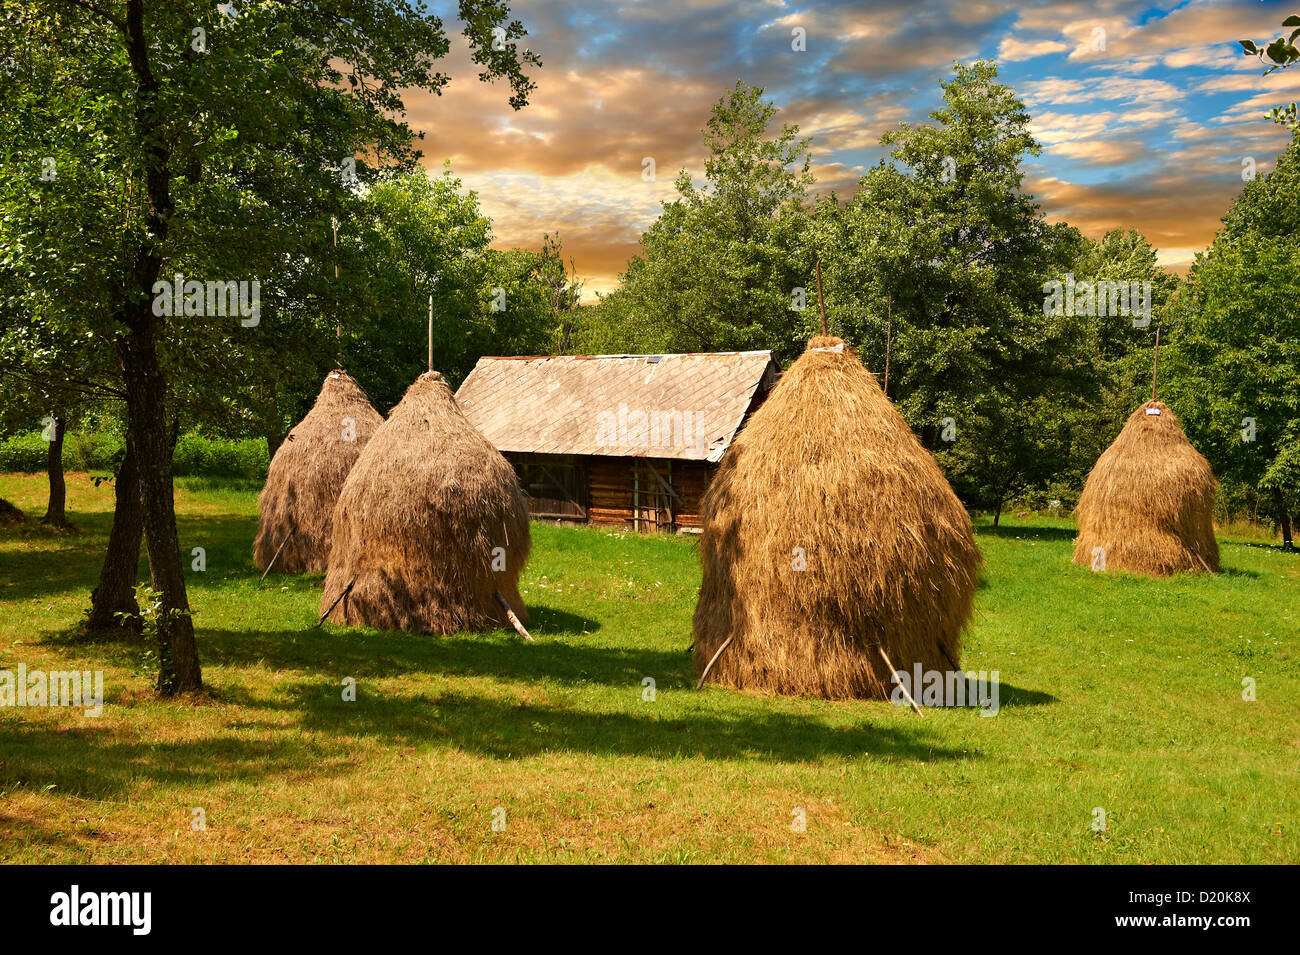 Ricks heno tradicional en un campo cerca de Breb arboladas, Nr Sighlet, Maramures, Transilvania Foto de stock